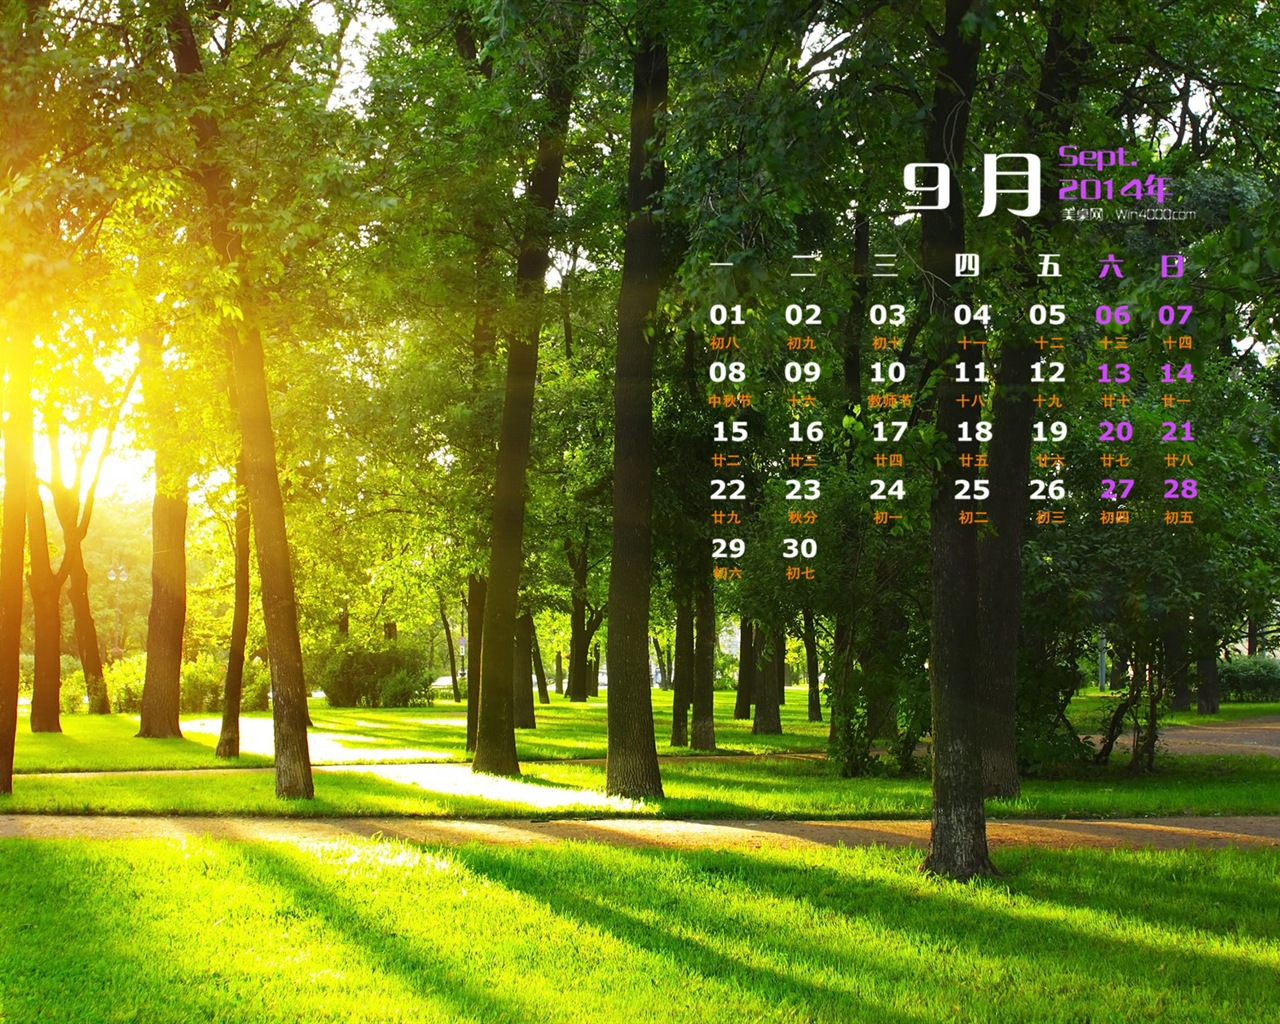 09 2014 wallpaper Calendario (1) #19 - 1280x1024